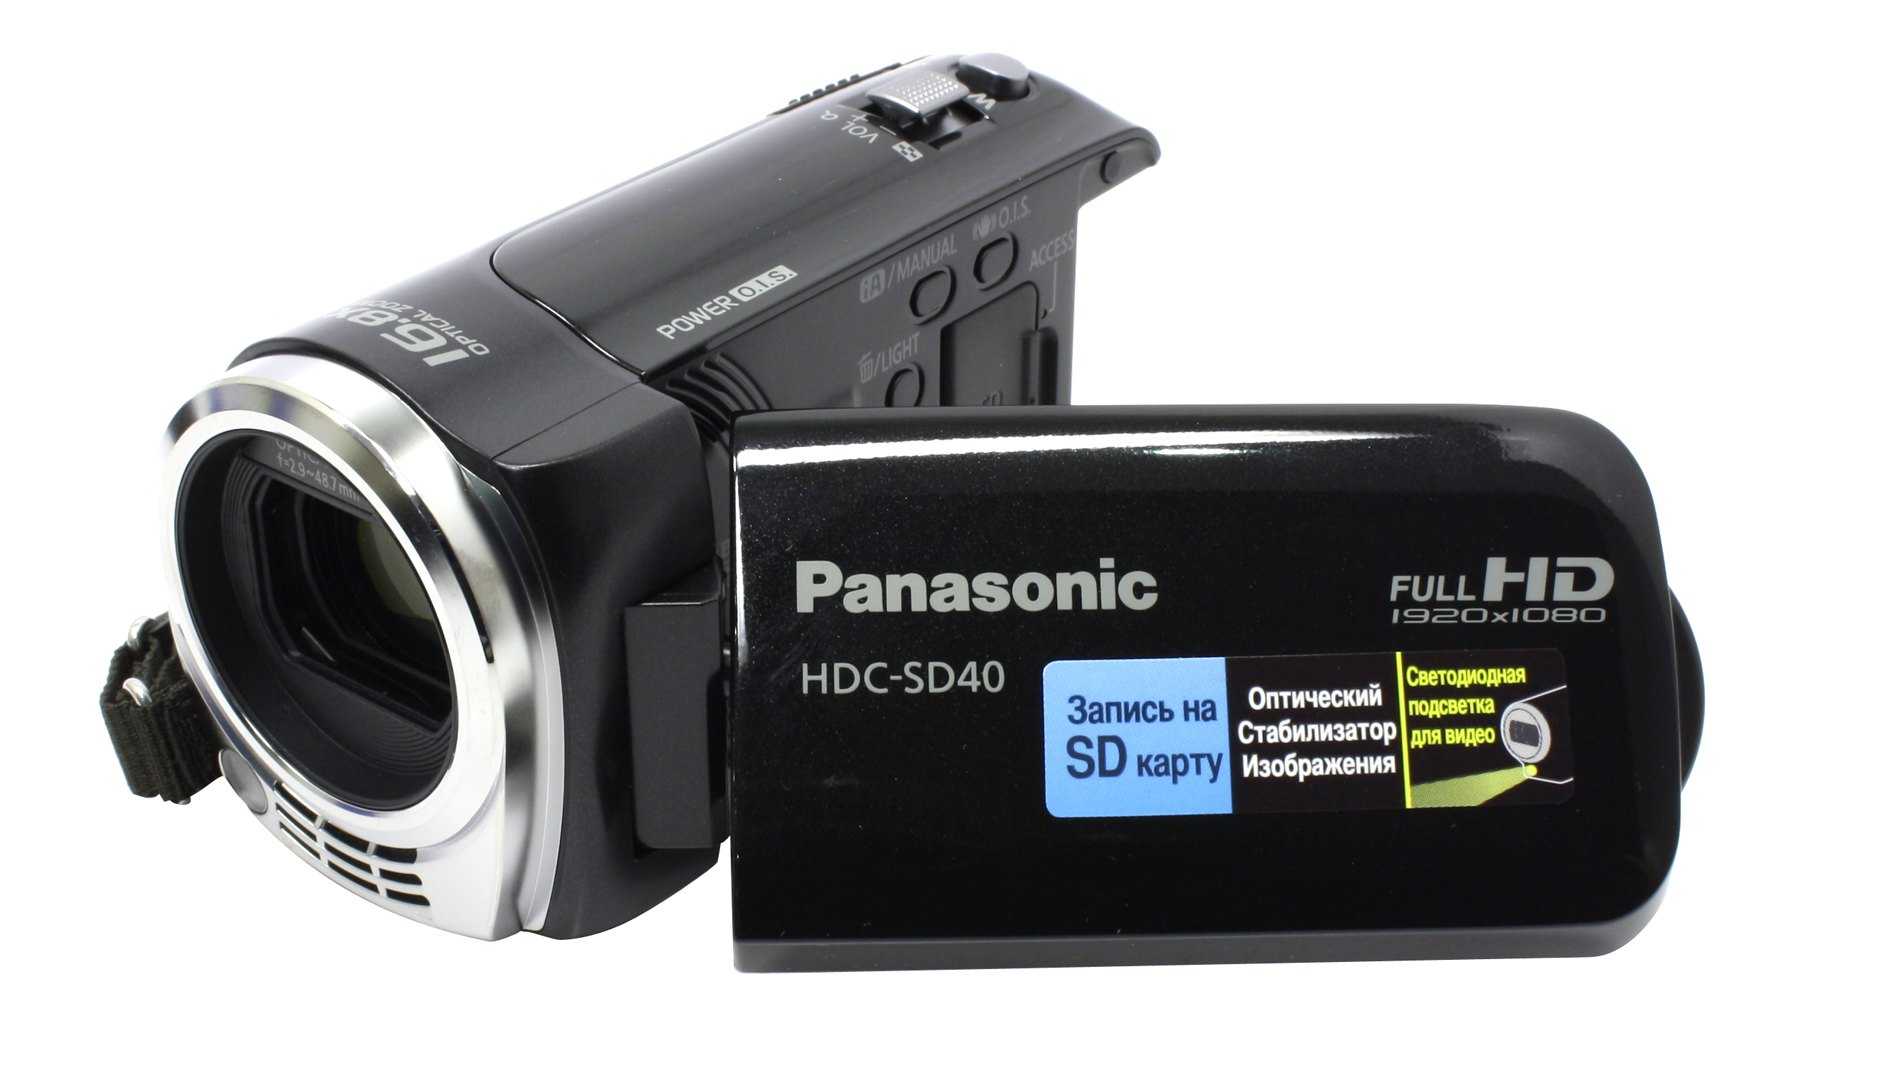 Panasonic hdc-sd40